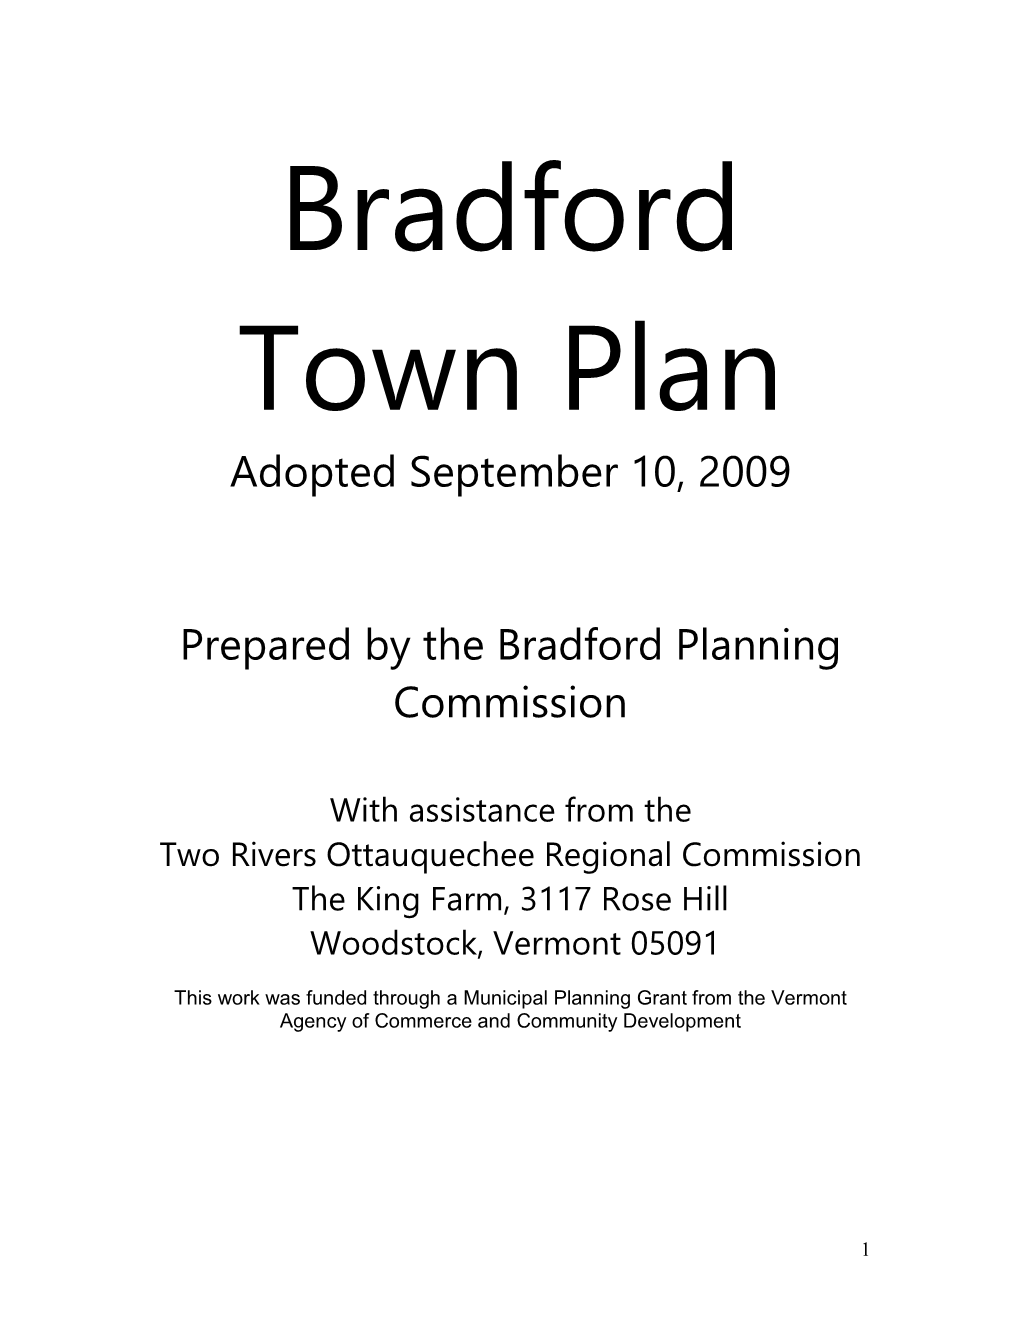 Bradford Town Plan Adopted September 10, 2009